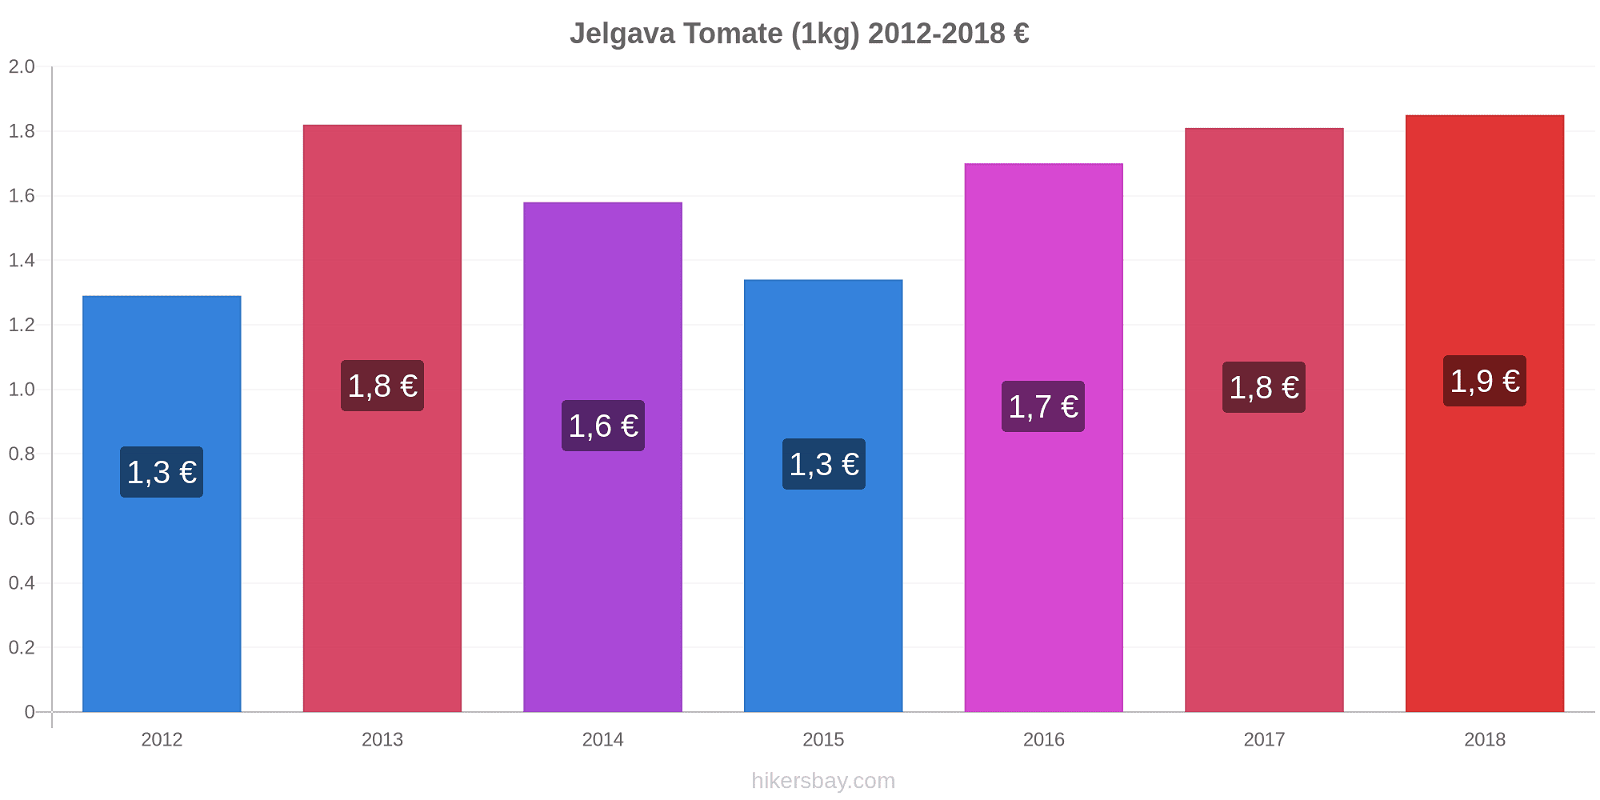 Jelgava changements de prix Tomate (1kg) hikersbay.com